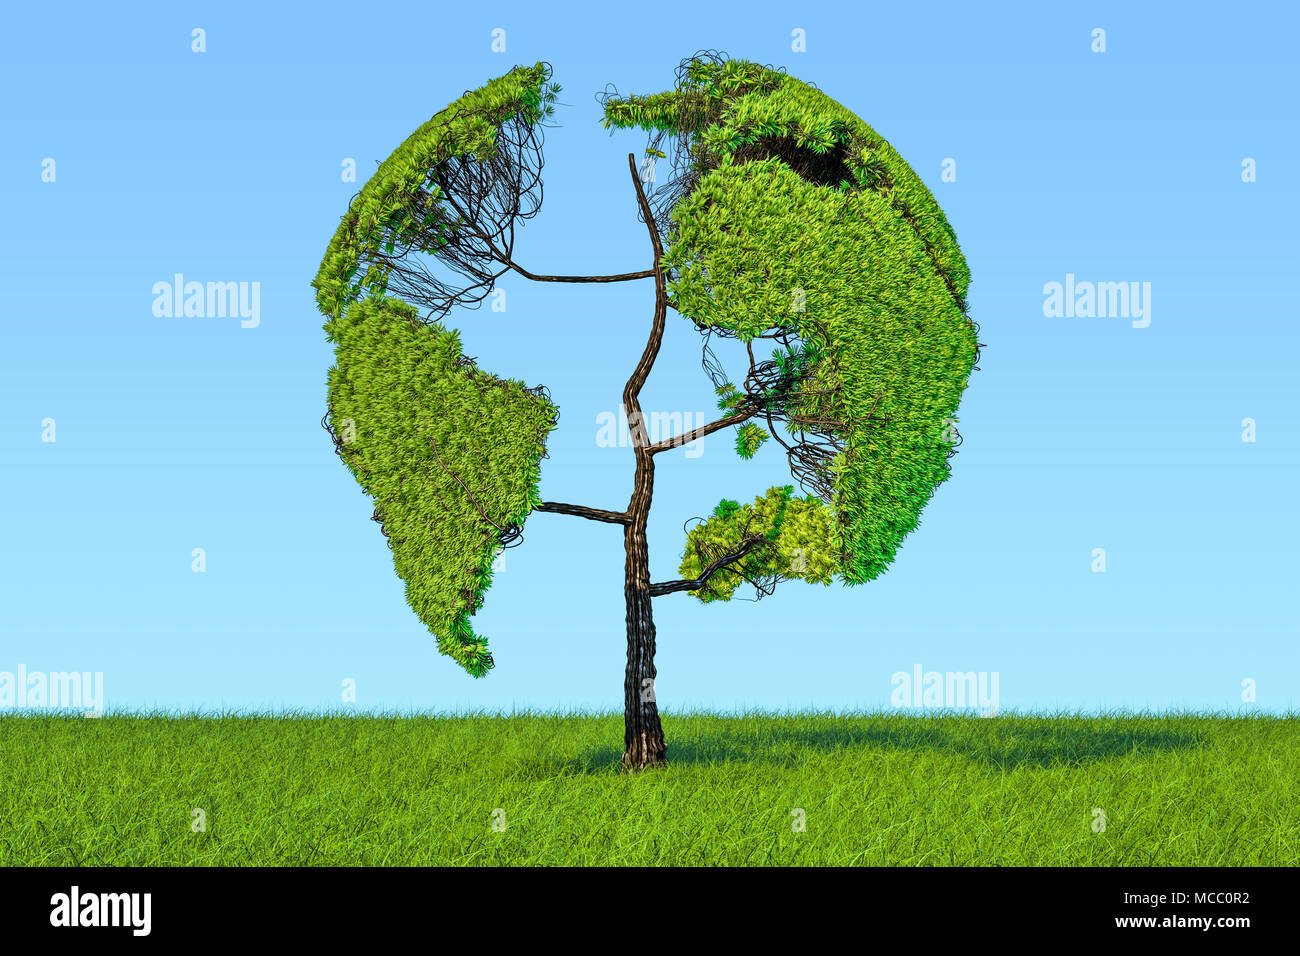 Albero a forma di globo terrestre sull'erba verde contro il cielo blu, rendering 3D Foto Stock